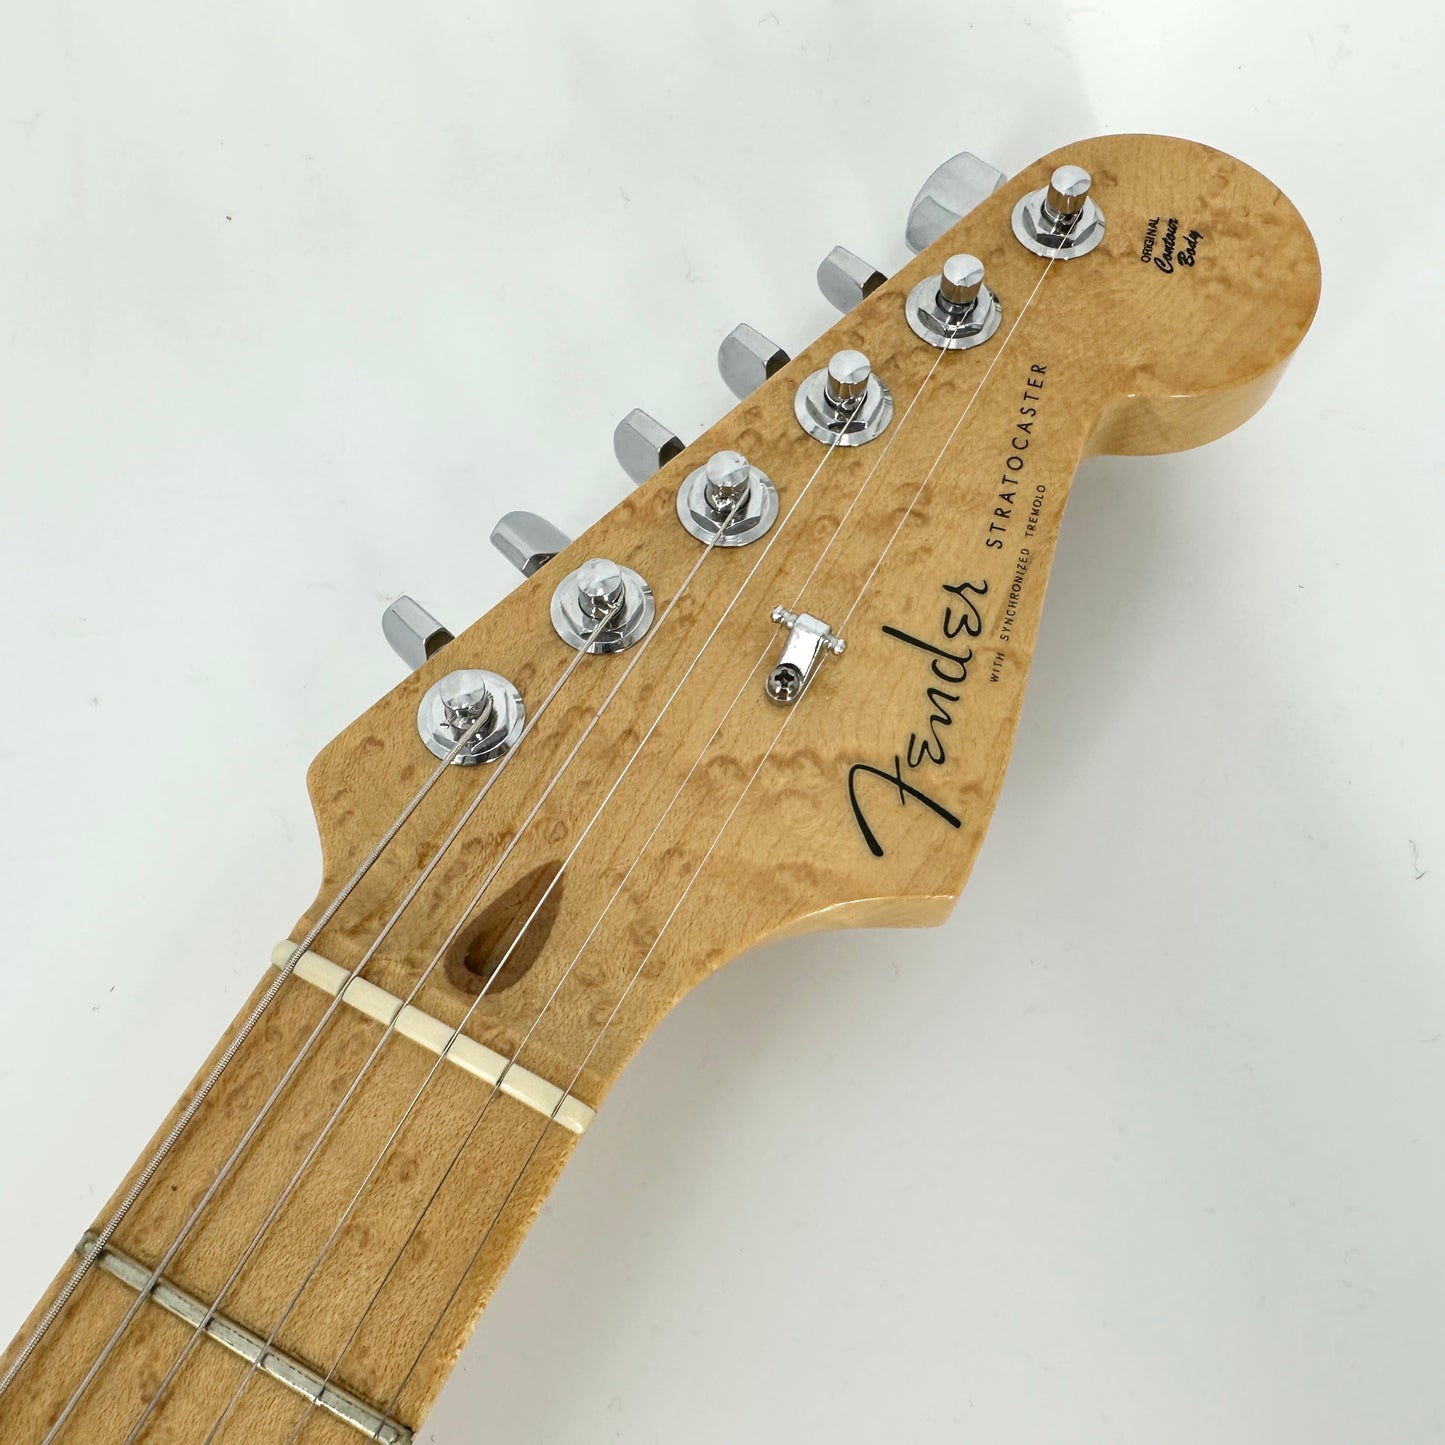 2003 Fender Custom Shop Custom Classic Stratocaster – Sunburst